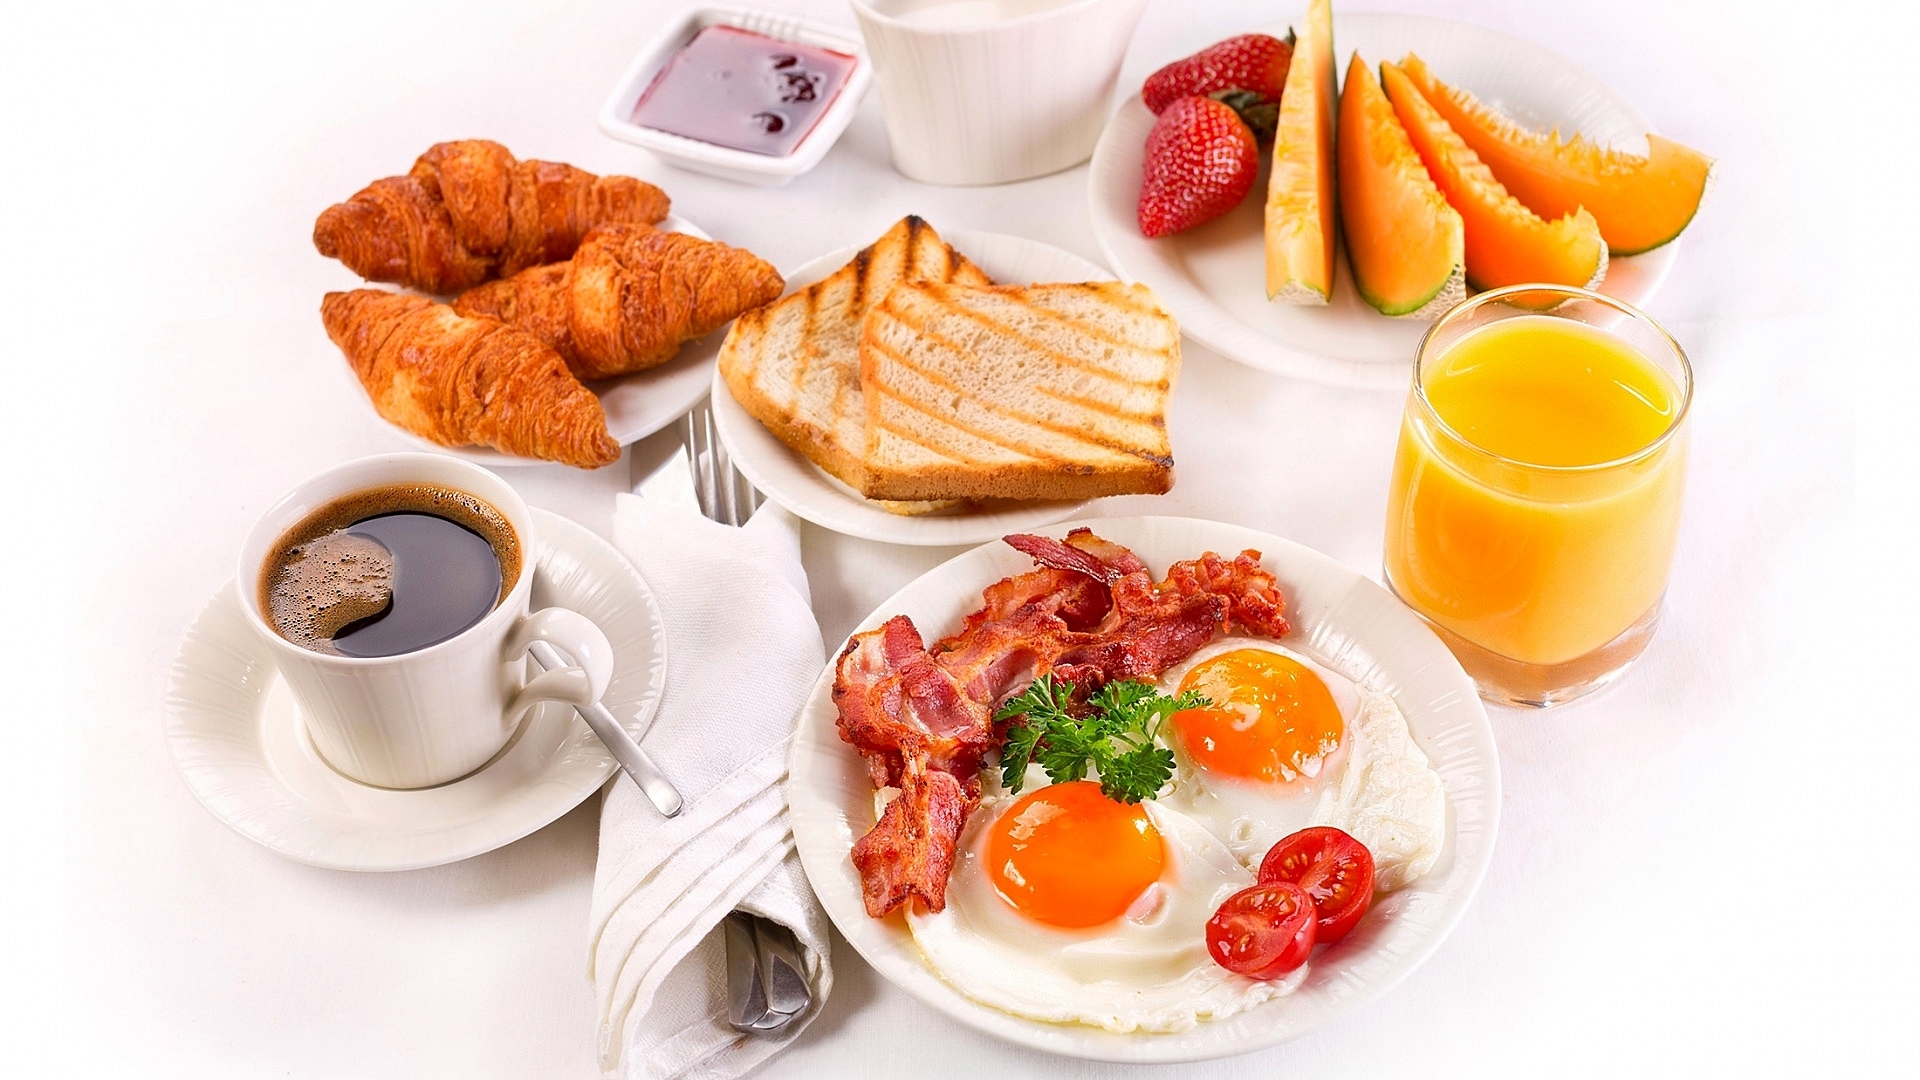 Śniadanie, Jajka, Sadzone, Boczek, Sztućce, Kawa, Sok,  Rogaliki, owoce